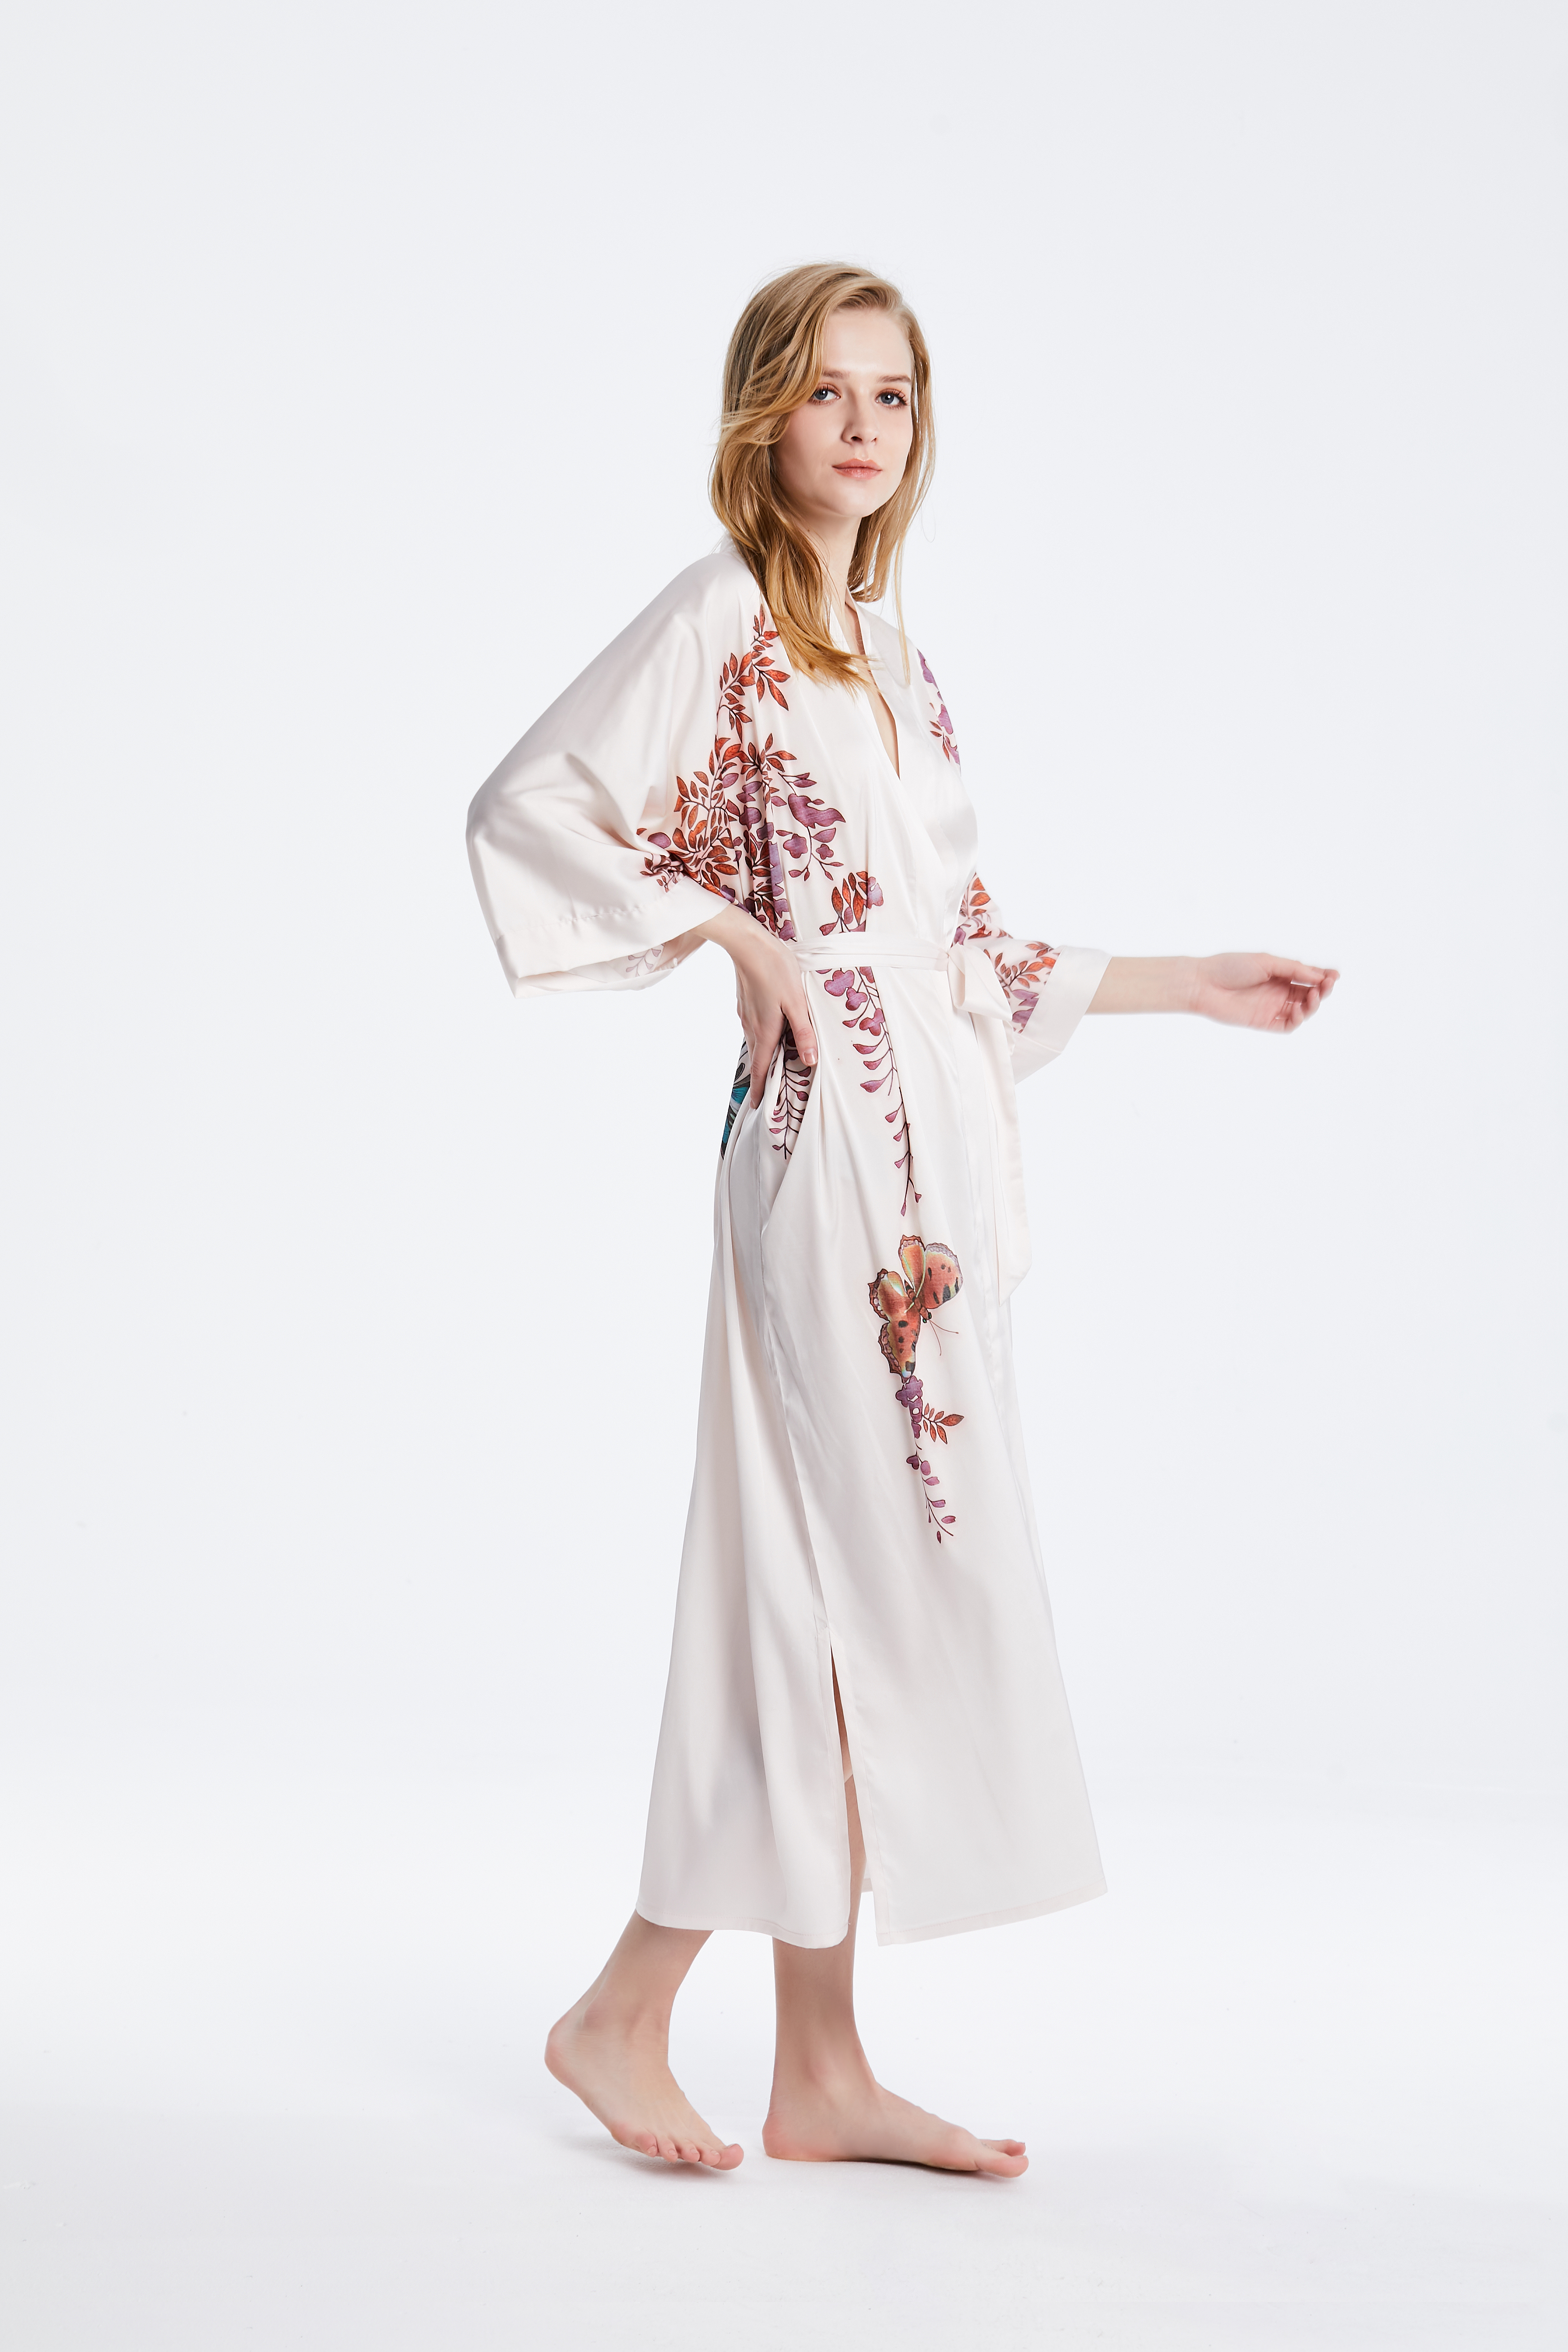 Seide Kimono Robe Großhandel